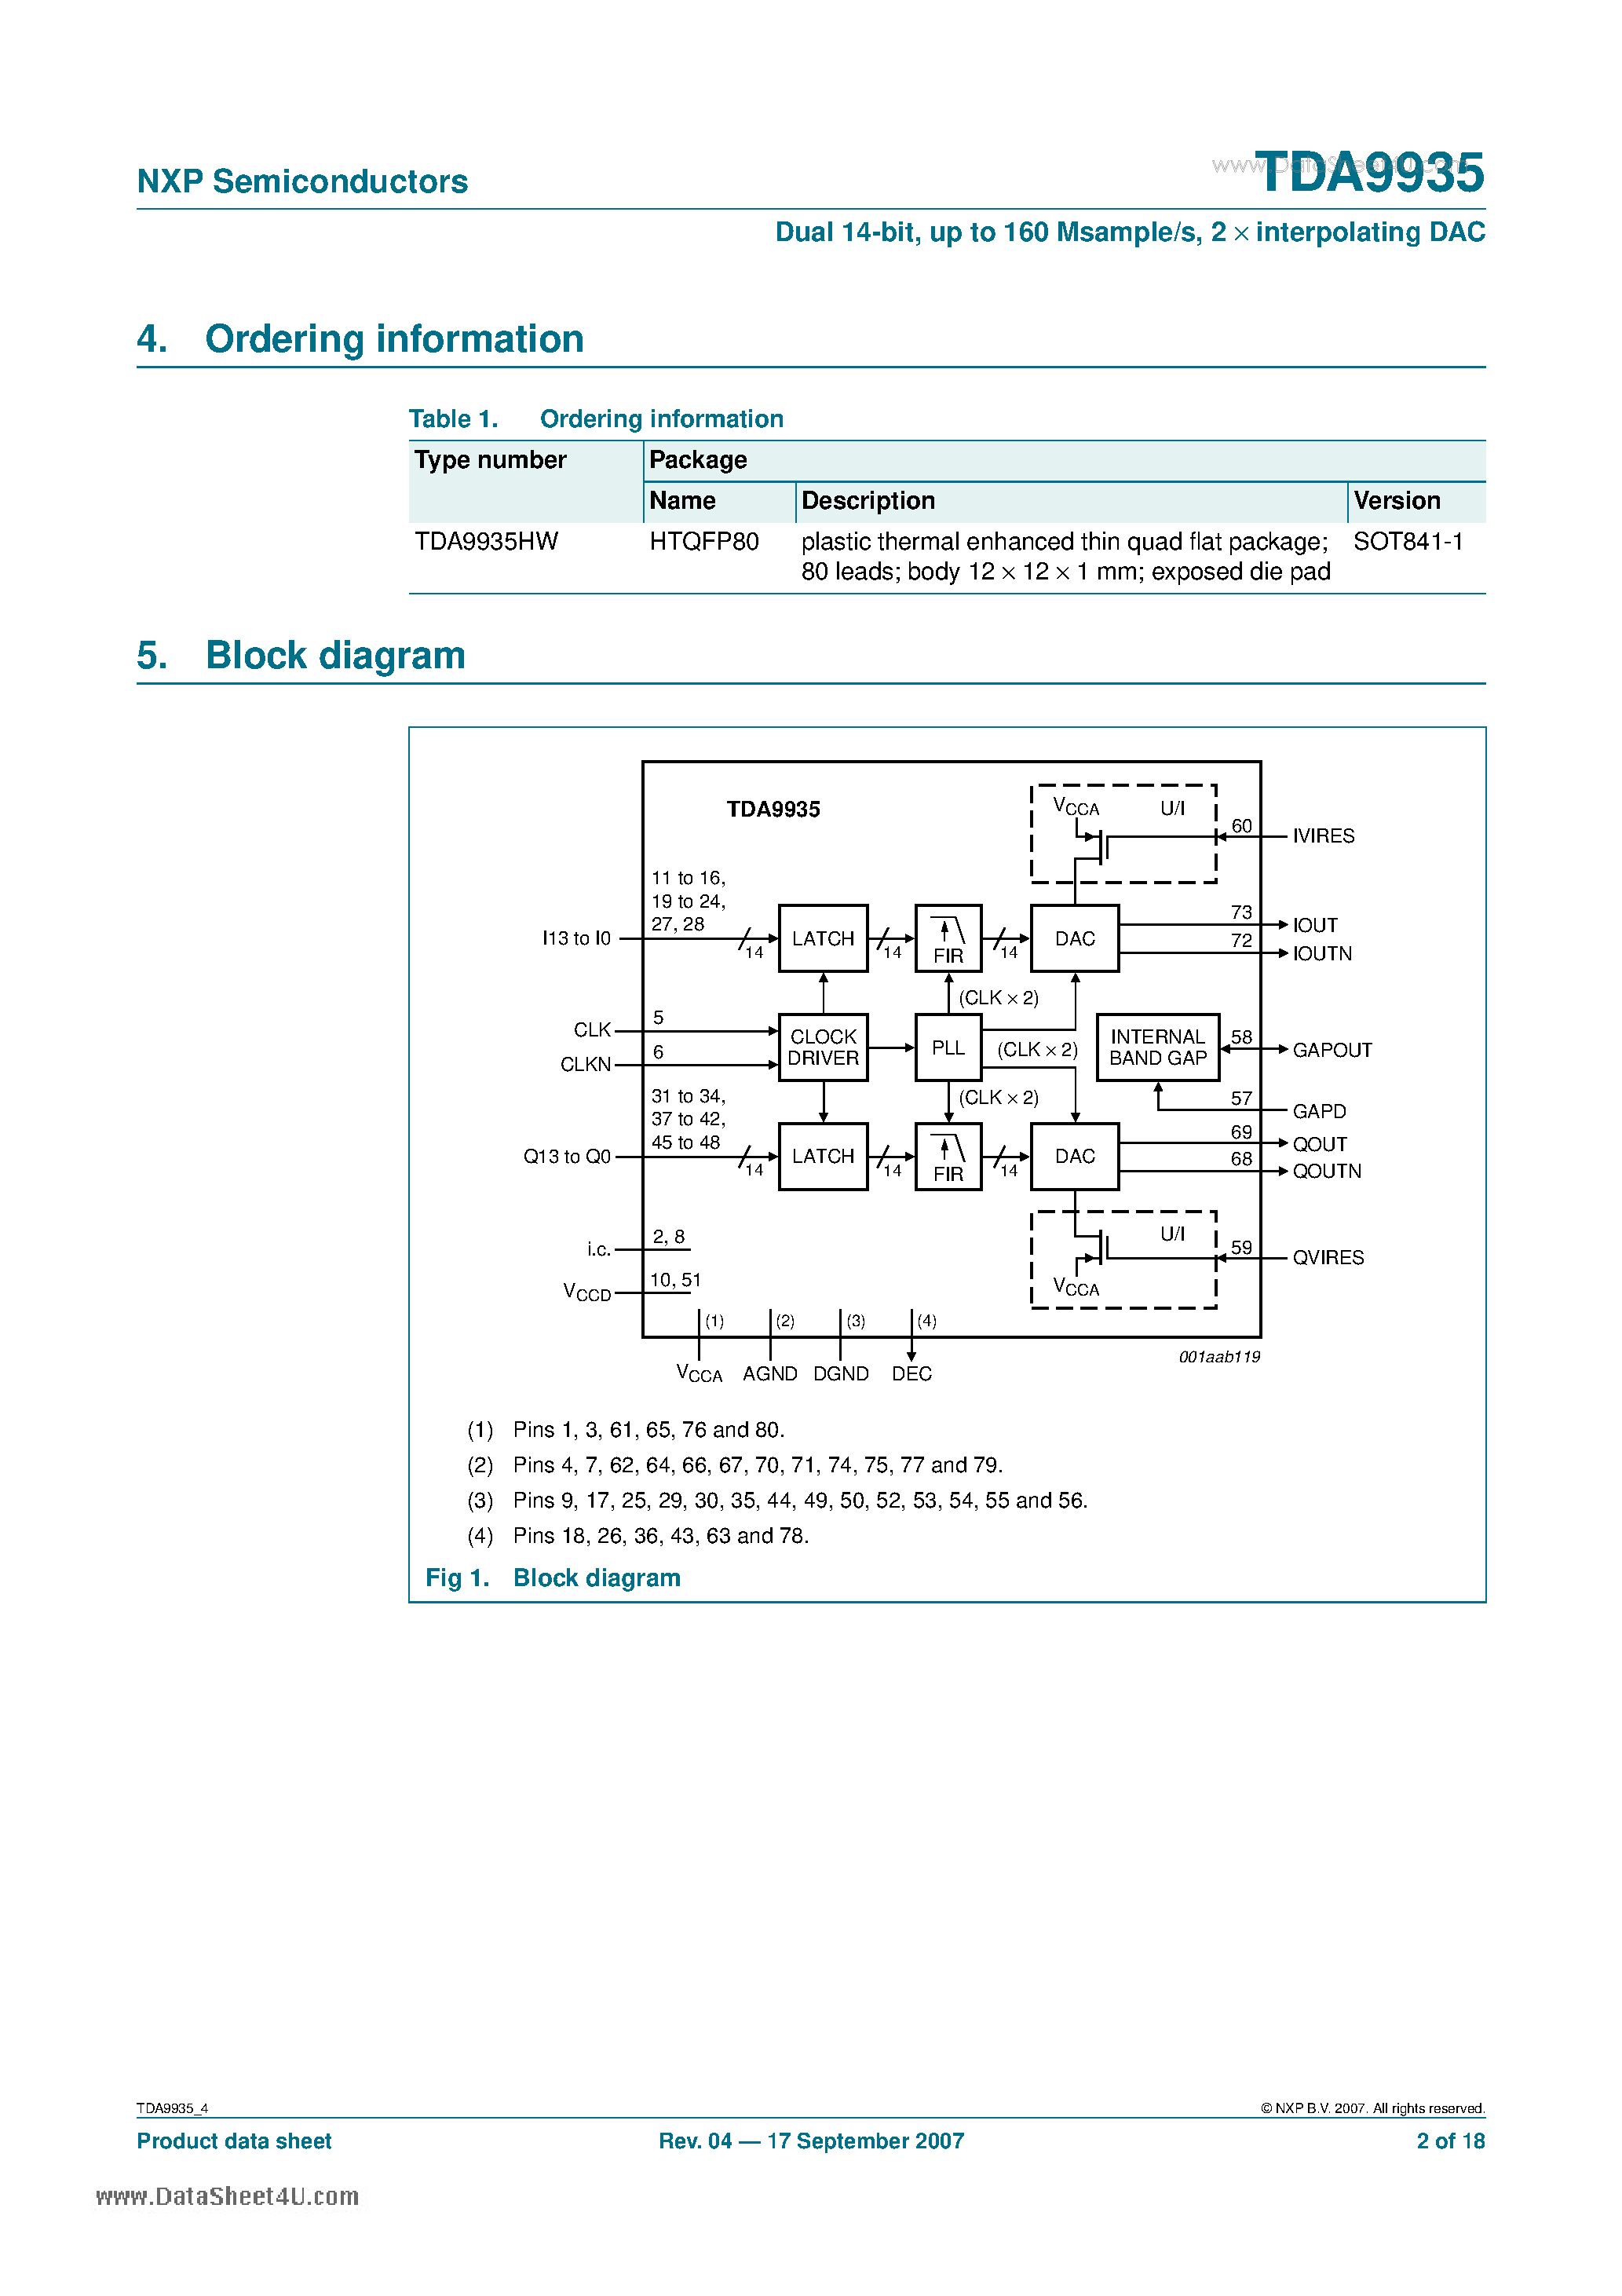 Datasheet TDA9935 - Dual 14-bit up to 160 Msample/s 2 interpolating Digital-to-Analog Converter page 2